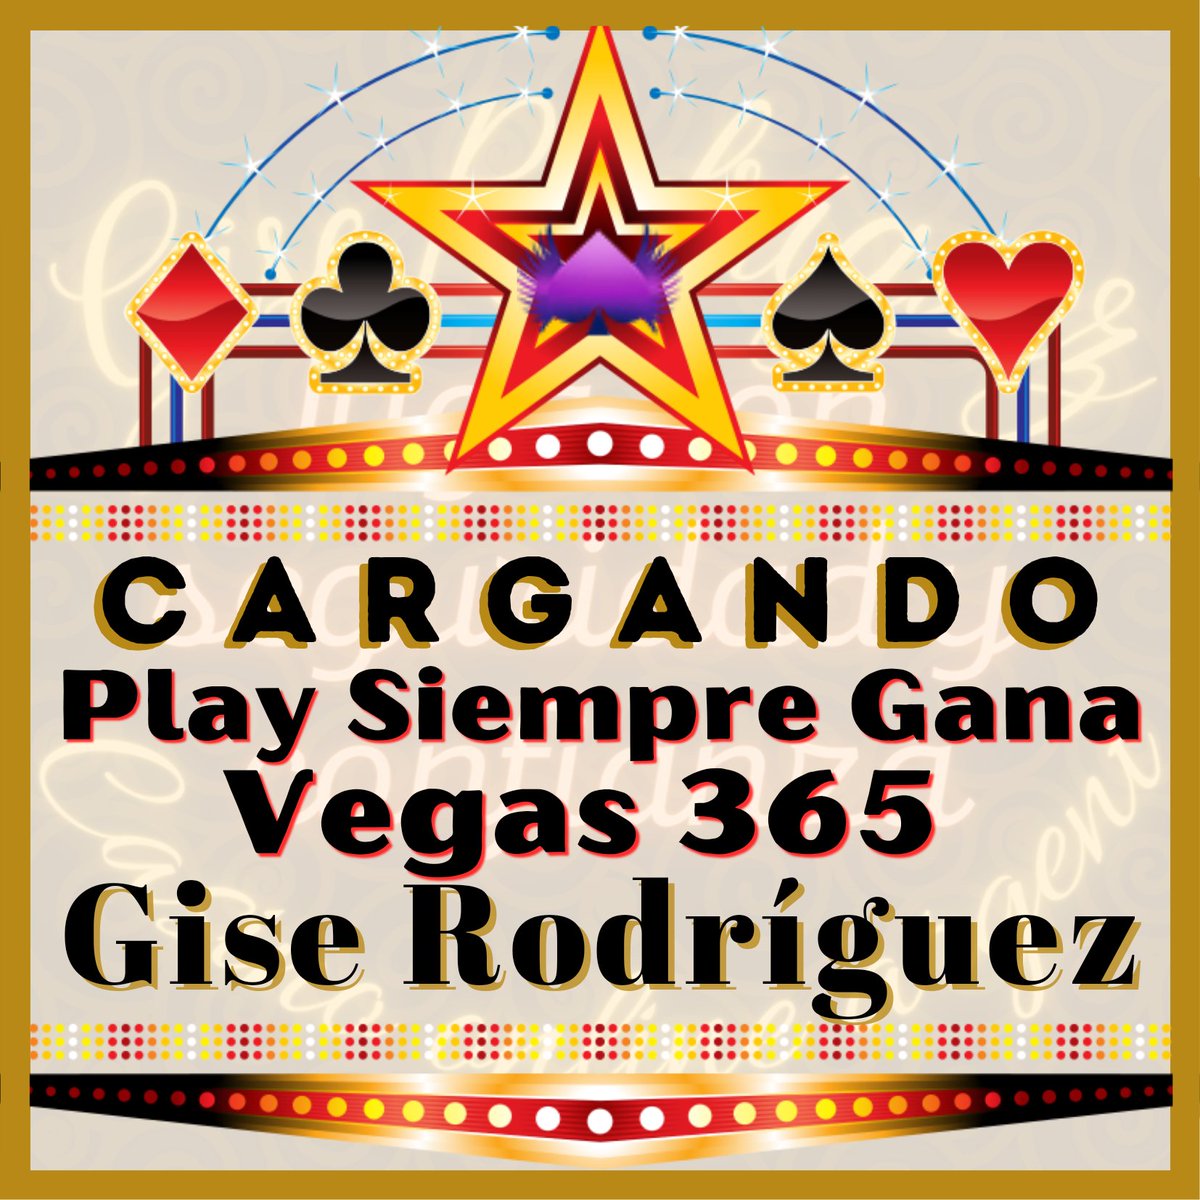 Estamos cargando
Casino Online Argent
Play siempre gana
Vegas365
Que esperas para probar tu suerte? 🍀🔥